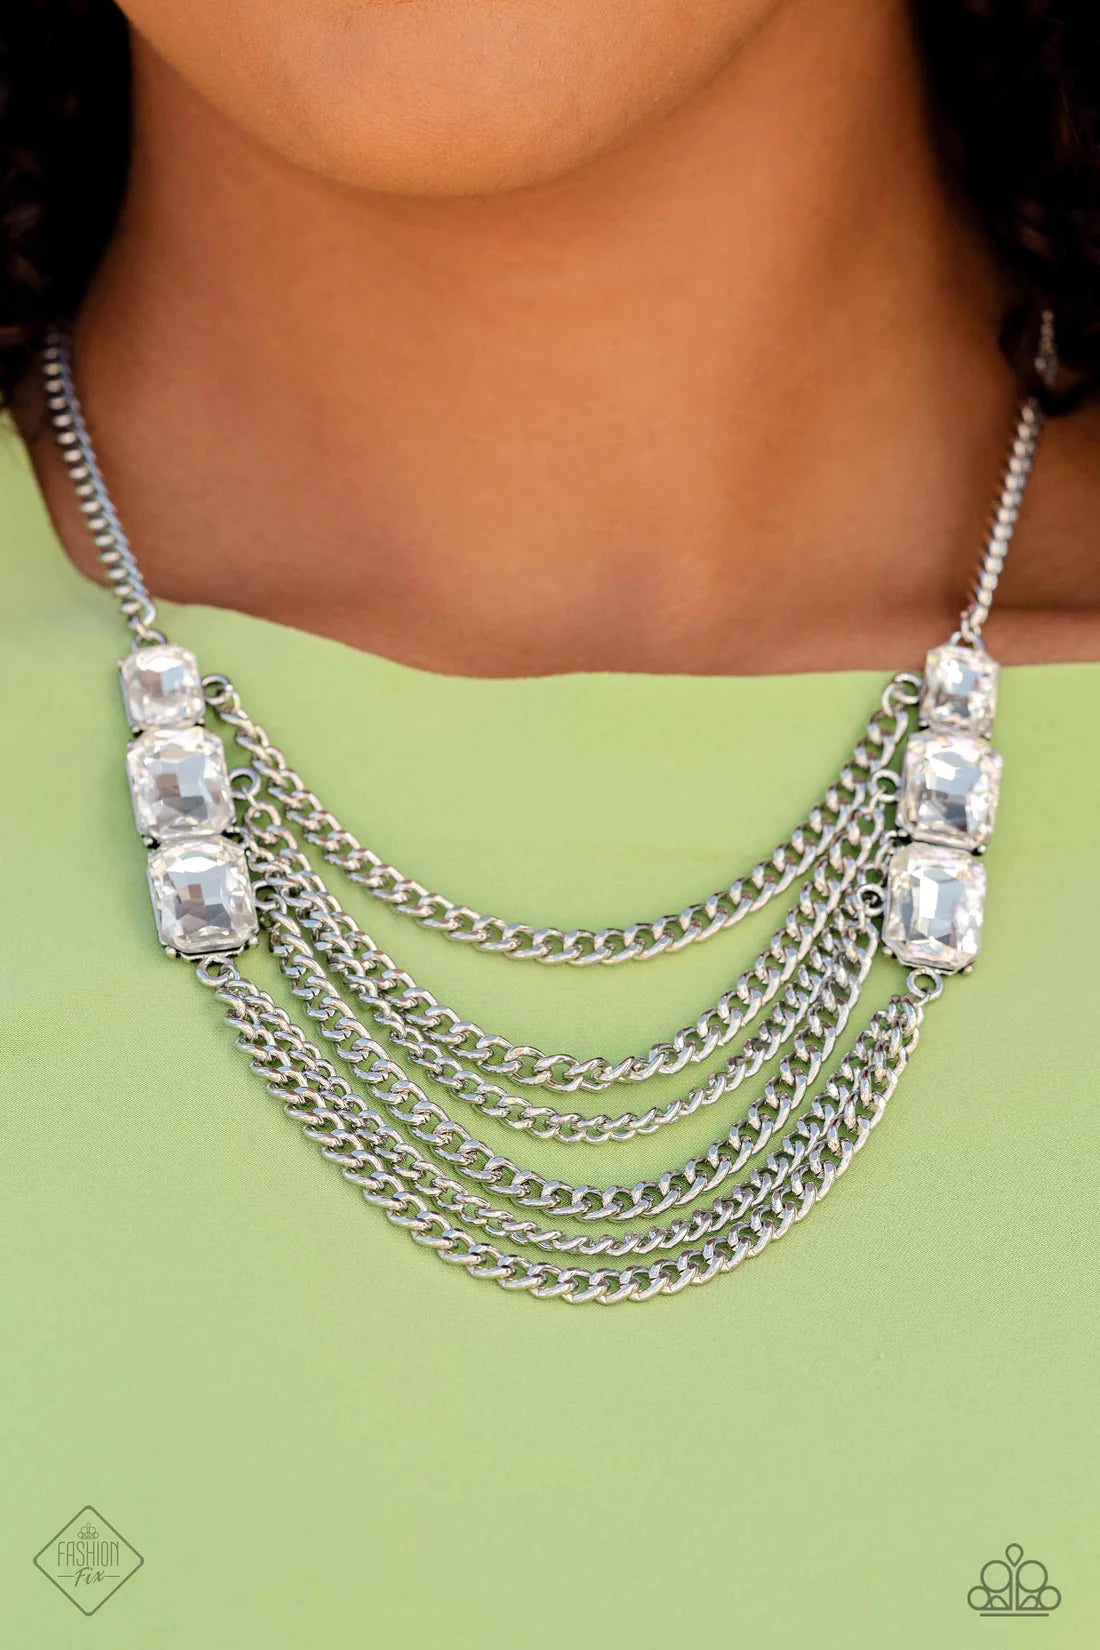 Paparazzi Necklaces - Come Chain of Shine - White - Fashion Fix